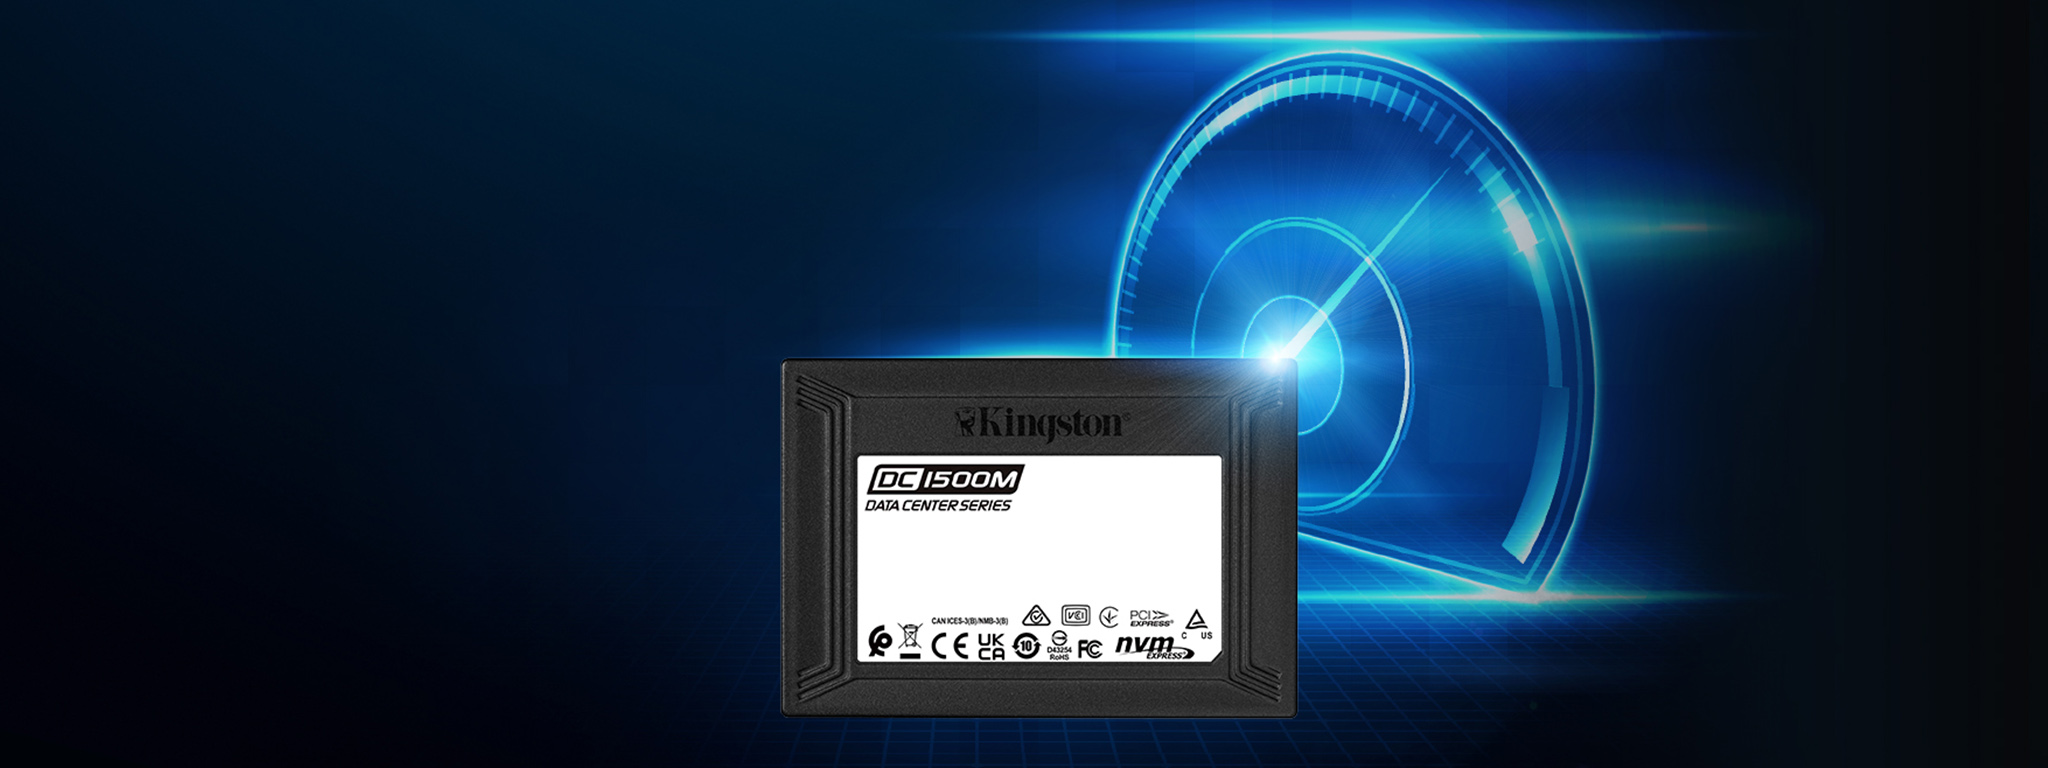 Ổ SSD DC1500M của Kingston đặt trước hình đồ họa về chiếc đồng hồ đo tốc độ cao đang phát sáng màu xanh lam